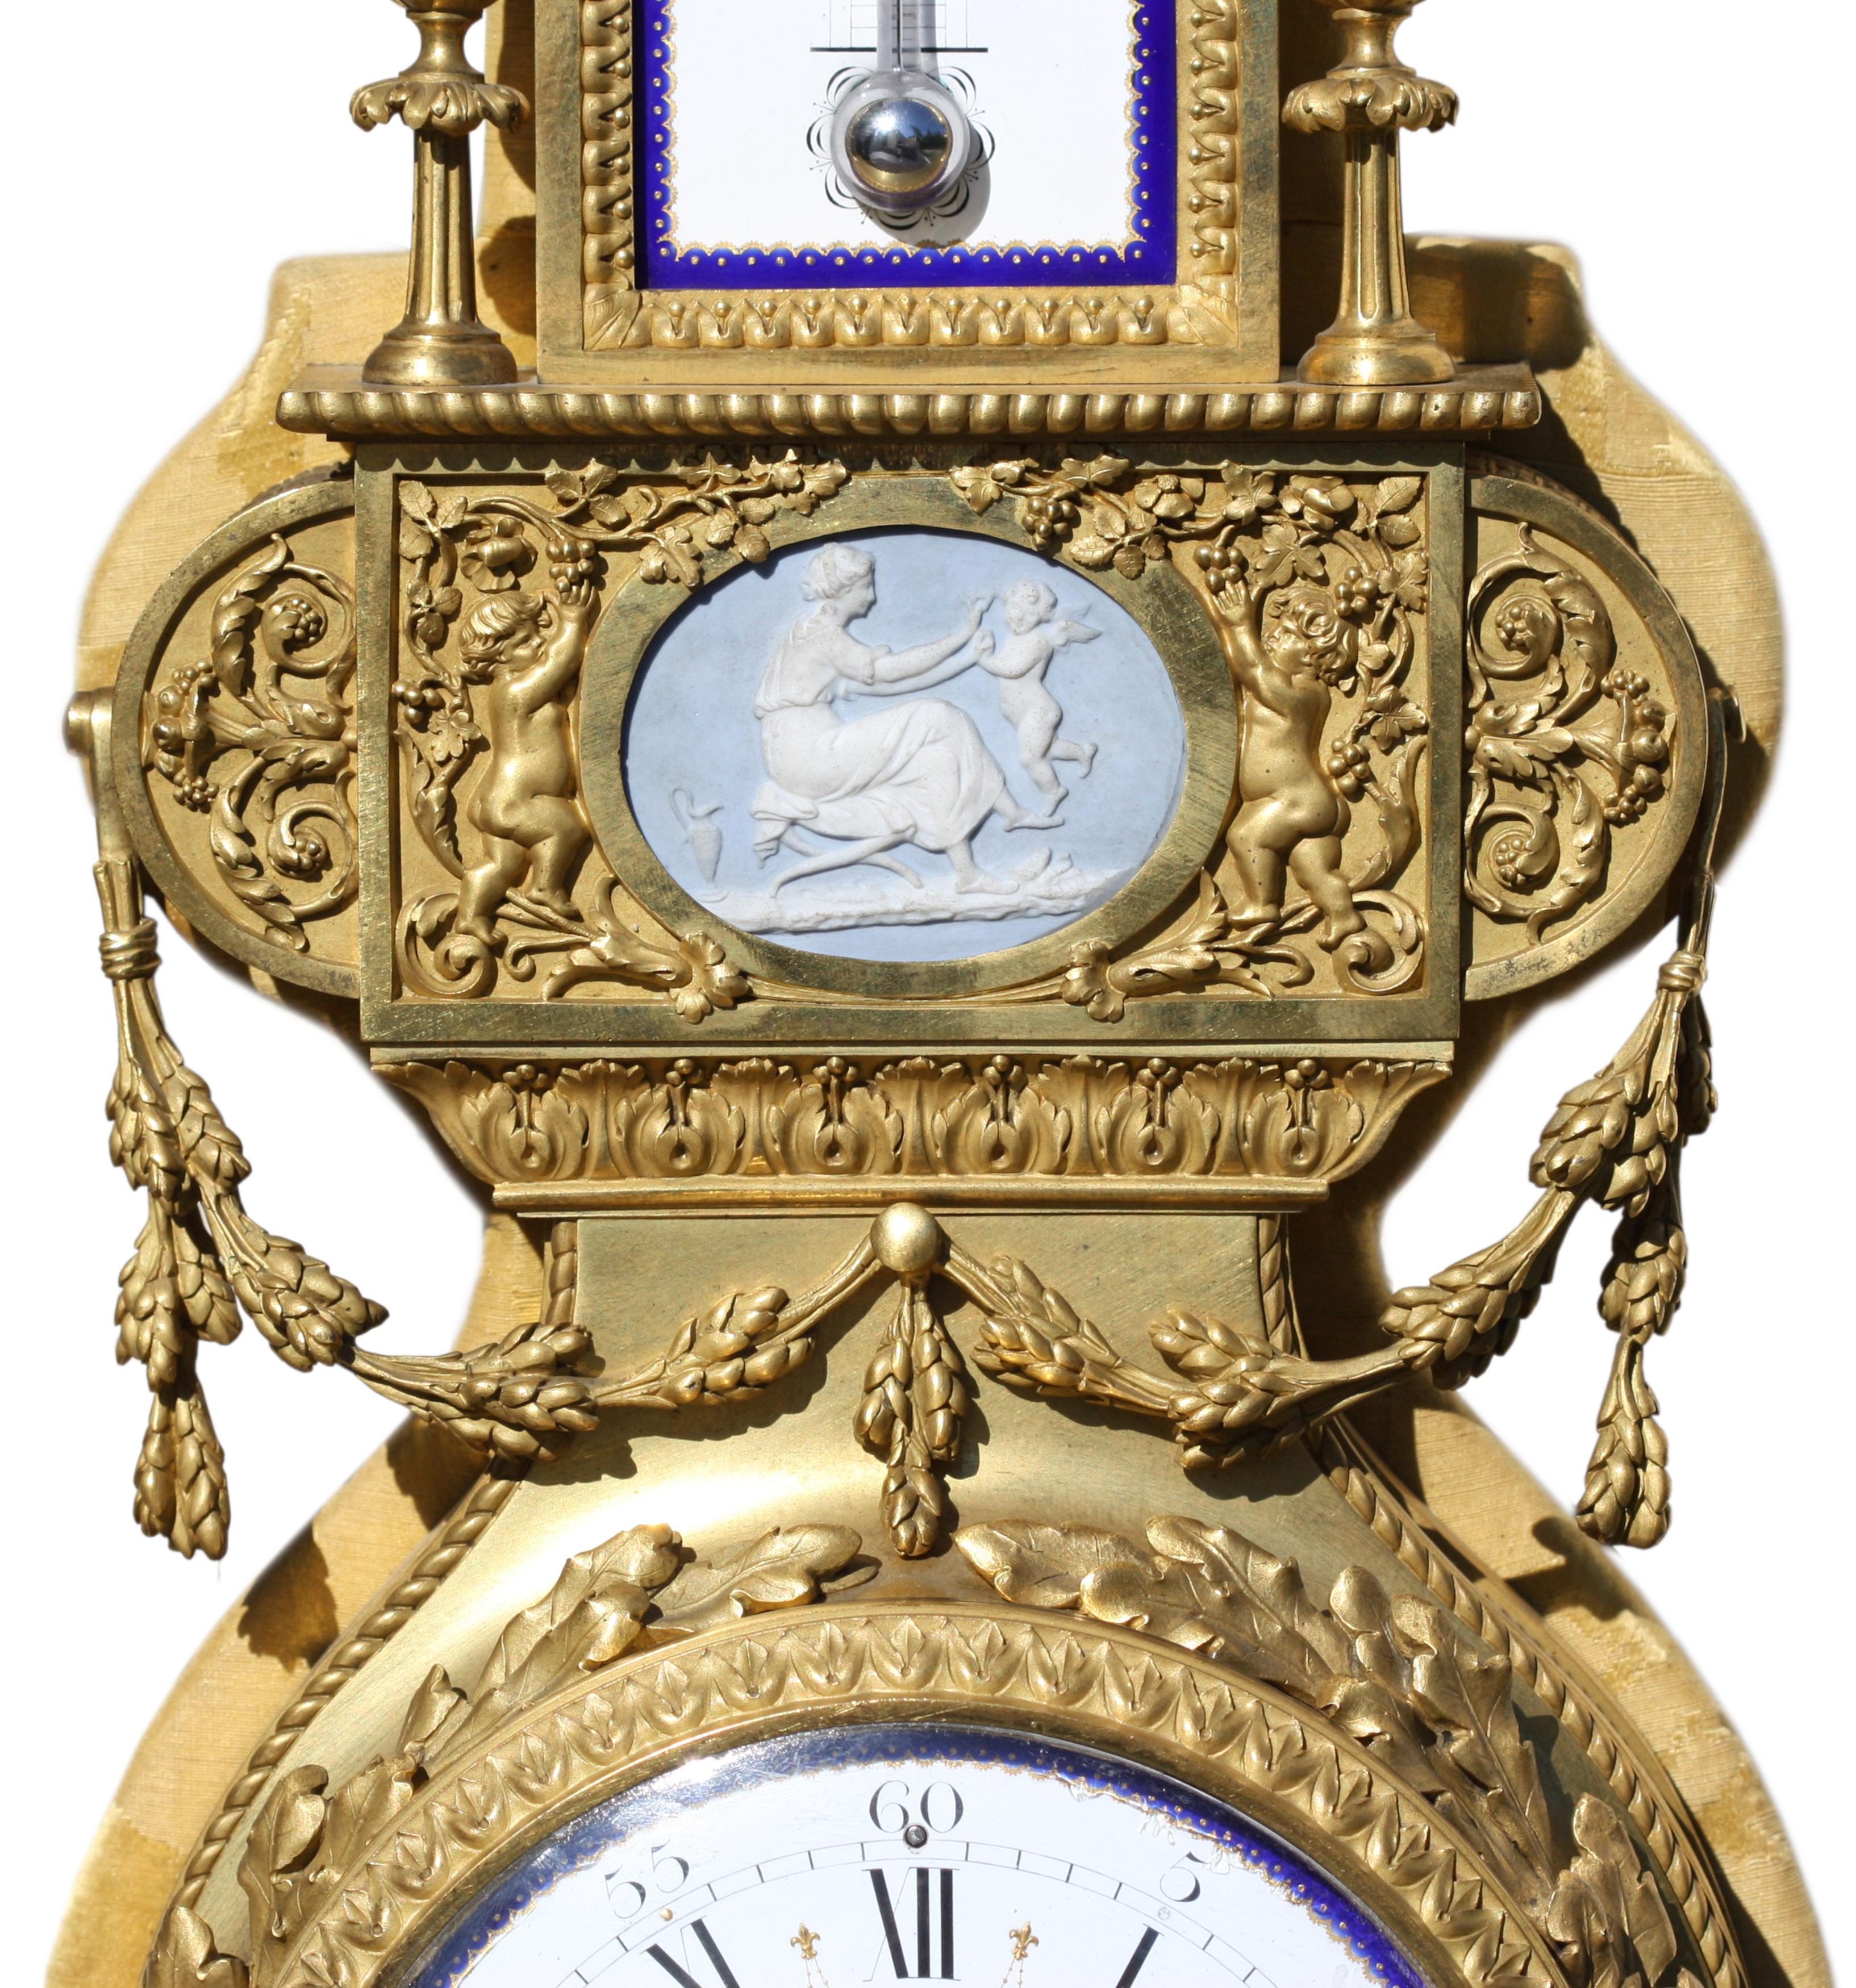 Henry DASSON (1825-1896)
Pendule de cartel de style Louis XVI en porcelaine ornée de bronze doré et baromètre assorti par Henry Dasson, Paris 1882 et 1878.
Tous deux incorporant des thermomètres, l'un à échelle centigrade et l'autre à échelle